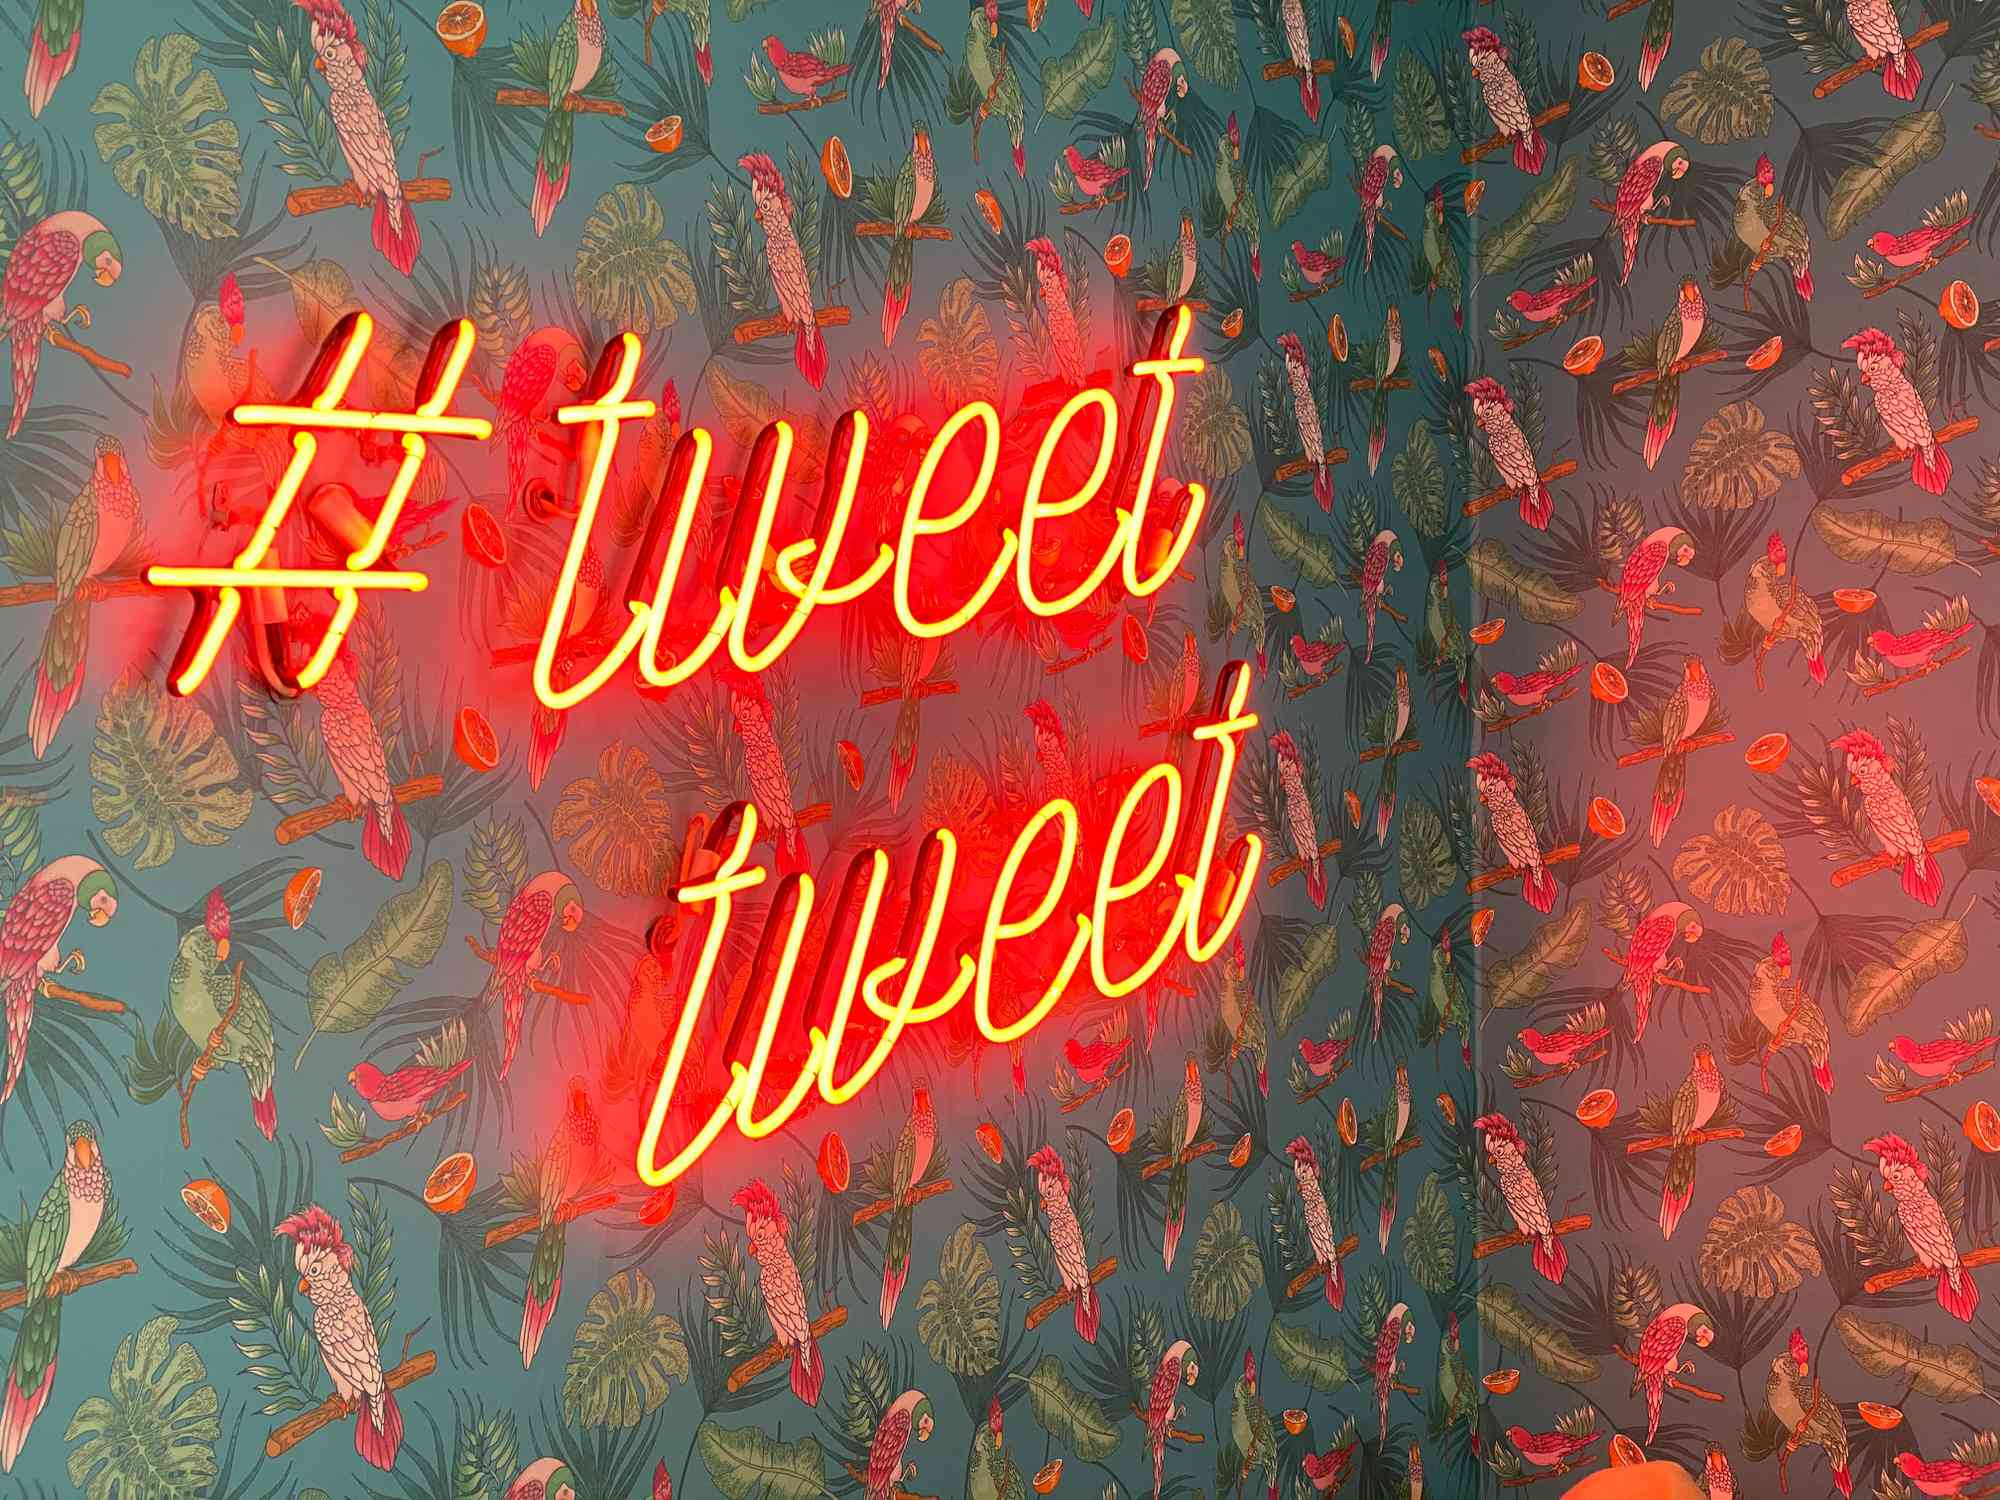 Een neonbord met de tekst #tweettweet tegen een muur bedekt met behang met papegaai- en jungle-thema.